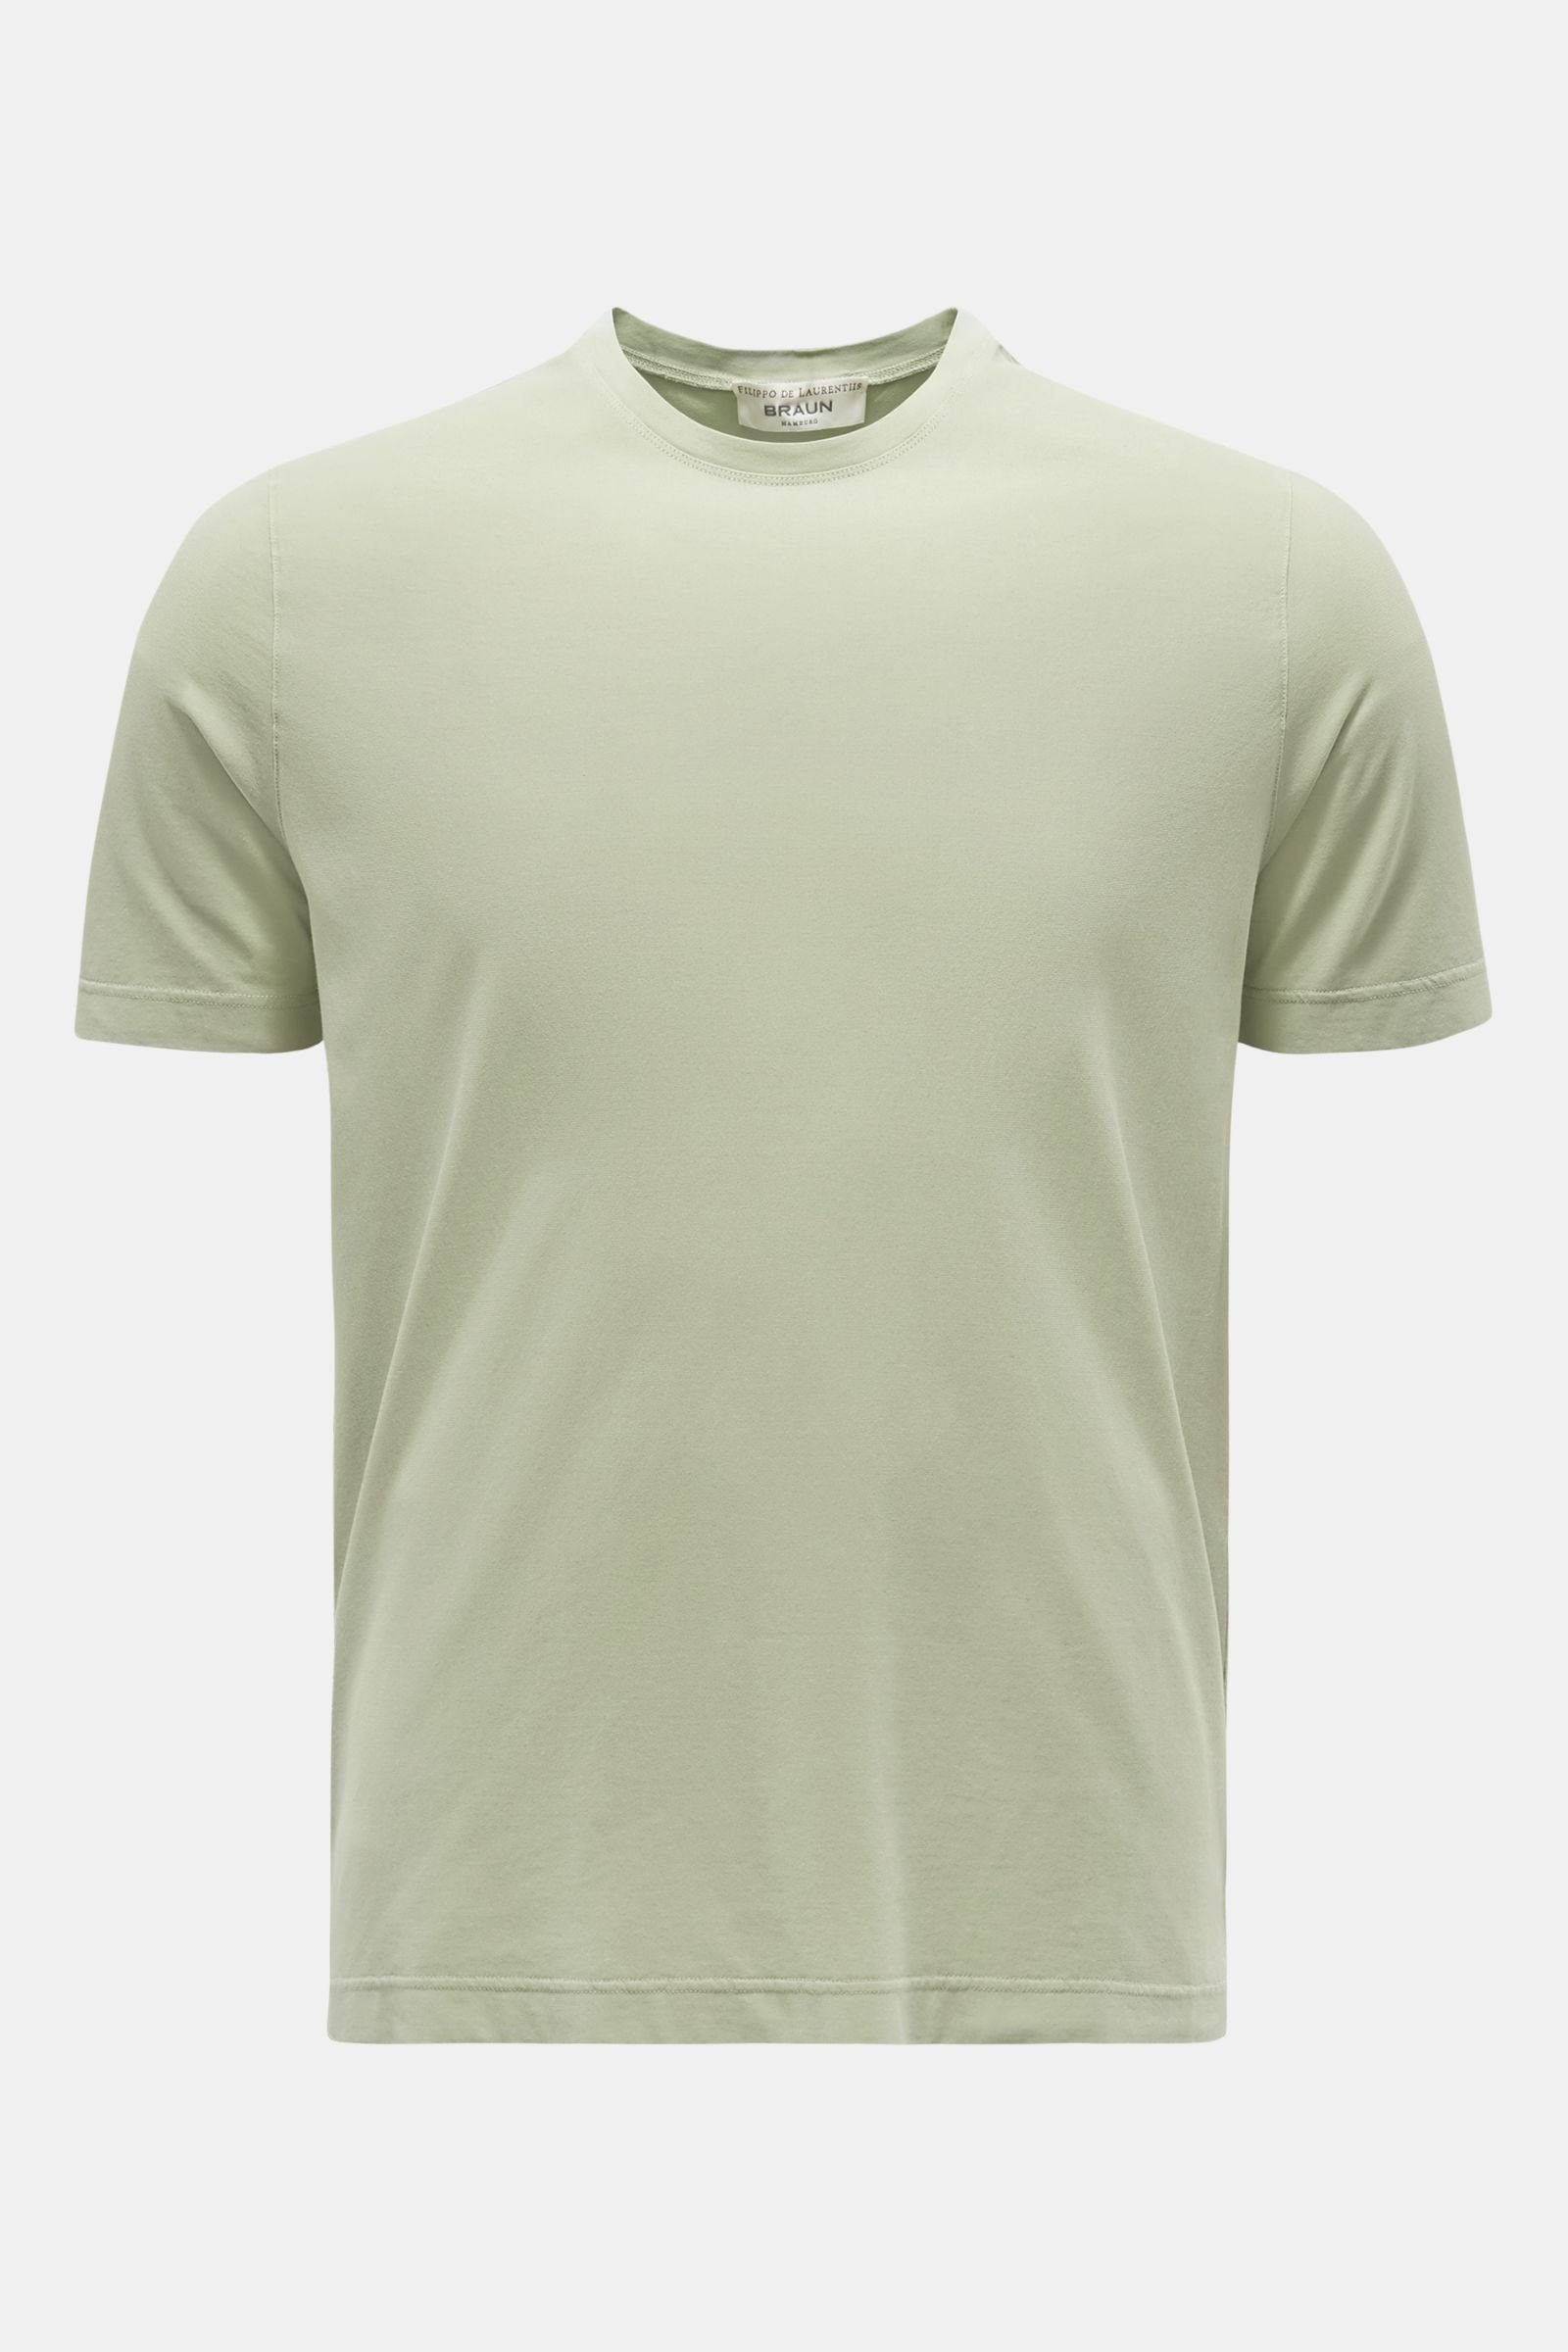 Crew neck T-shirt light green